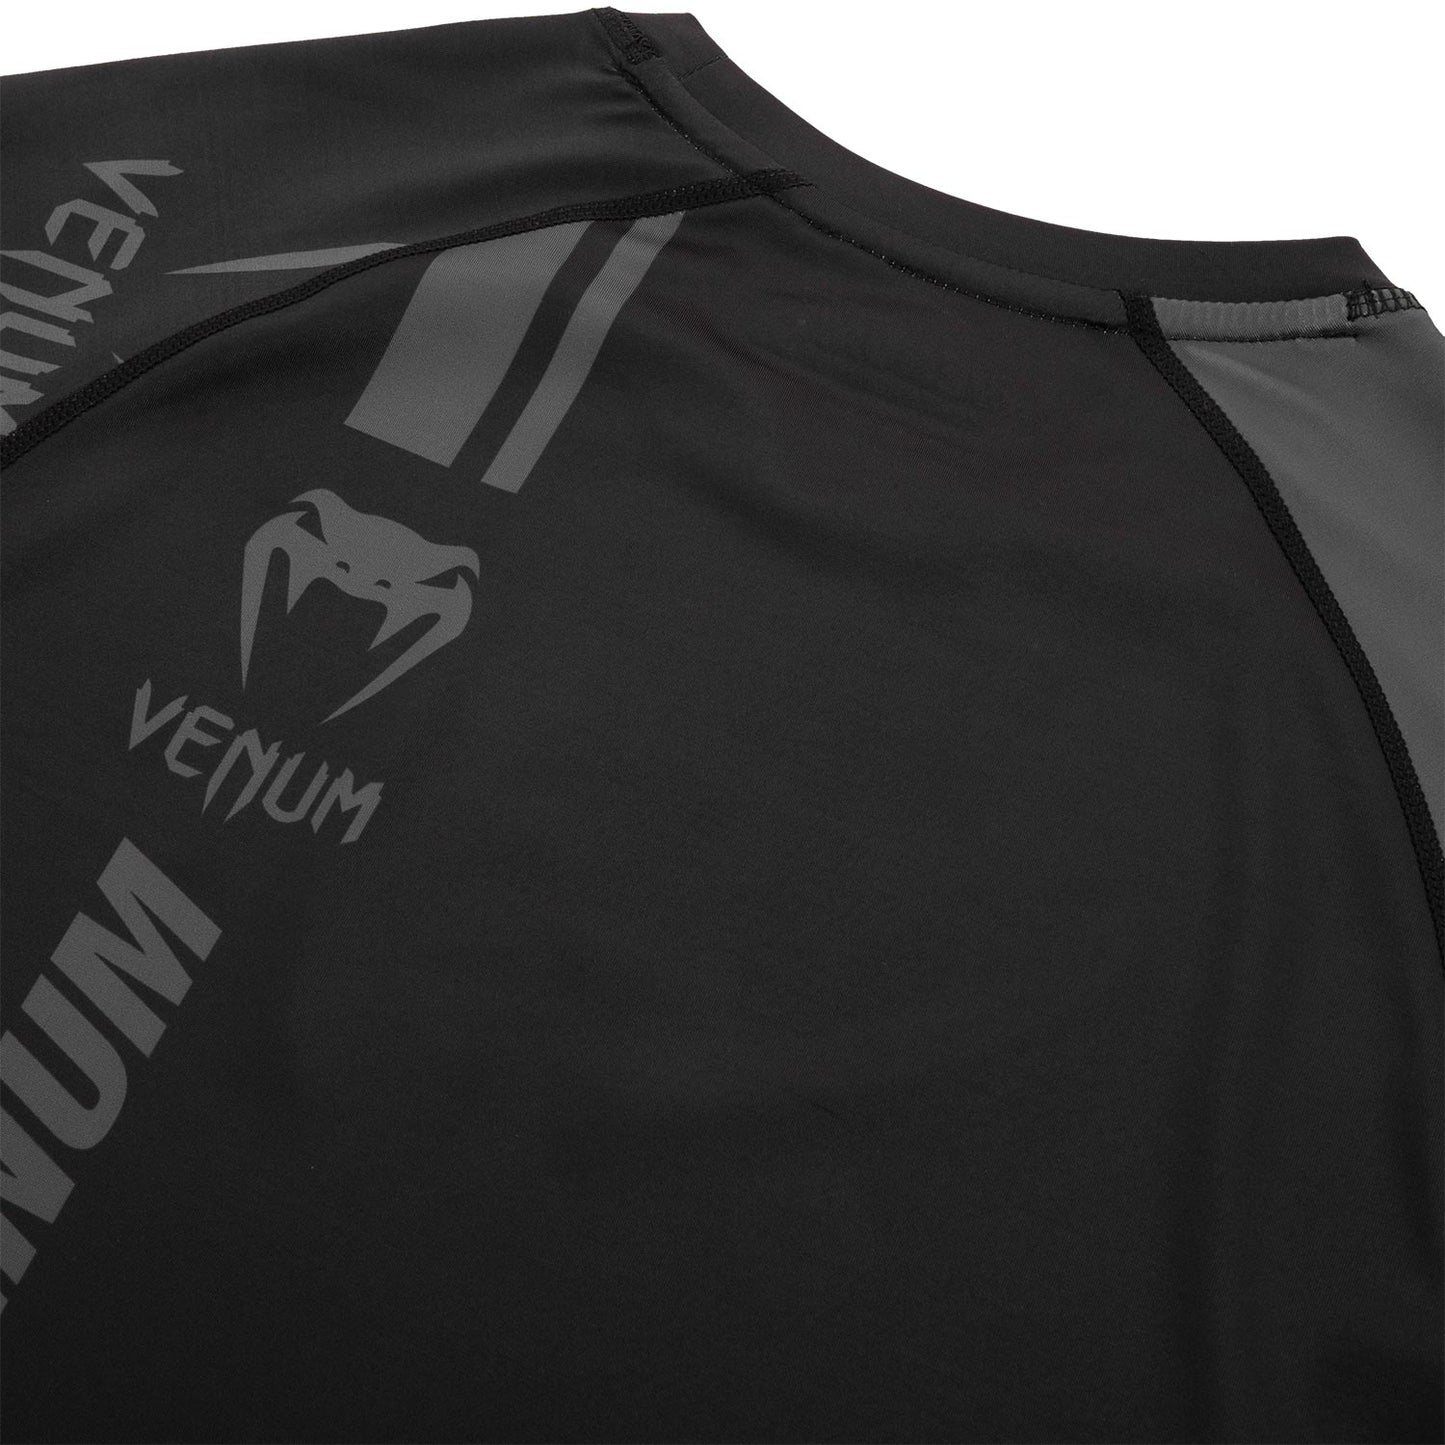 Venum Logos Rashguard - Long Sleeves - Black/Black